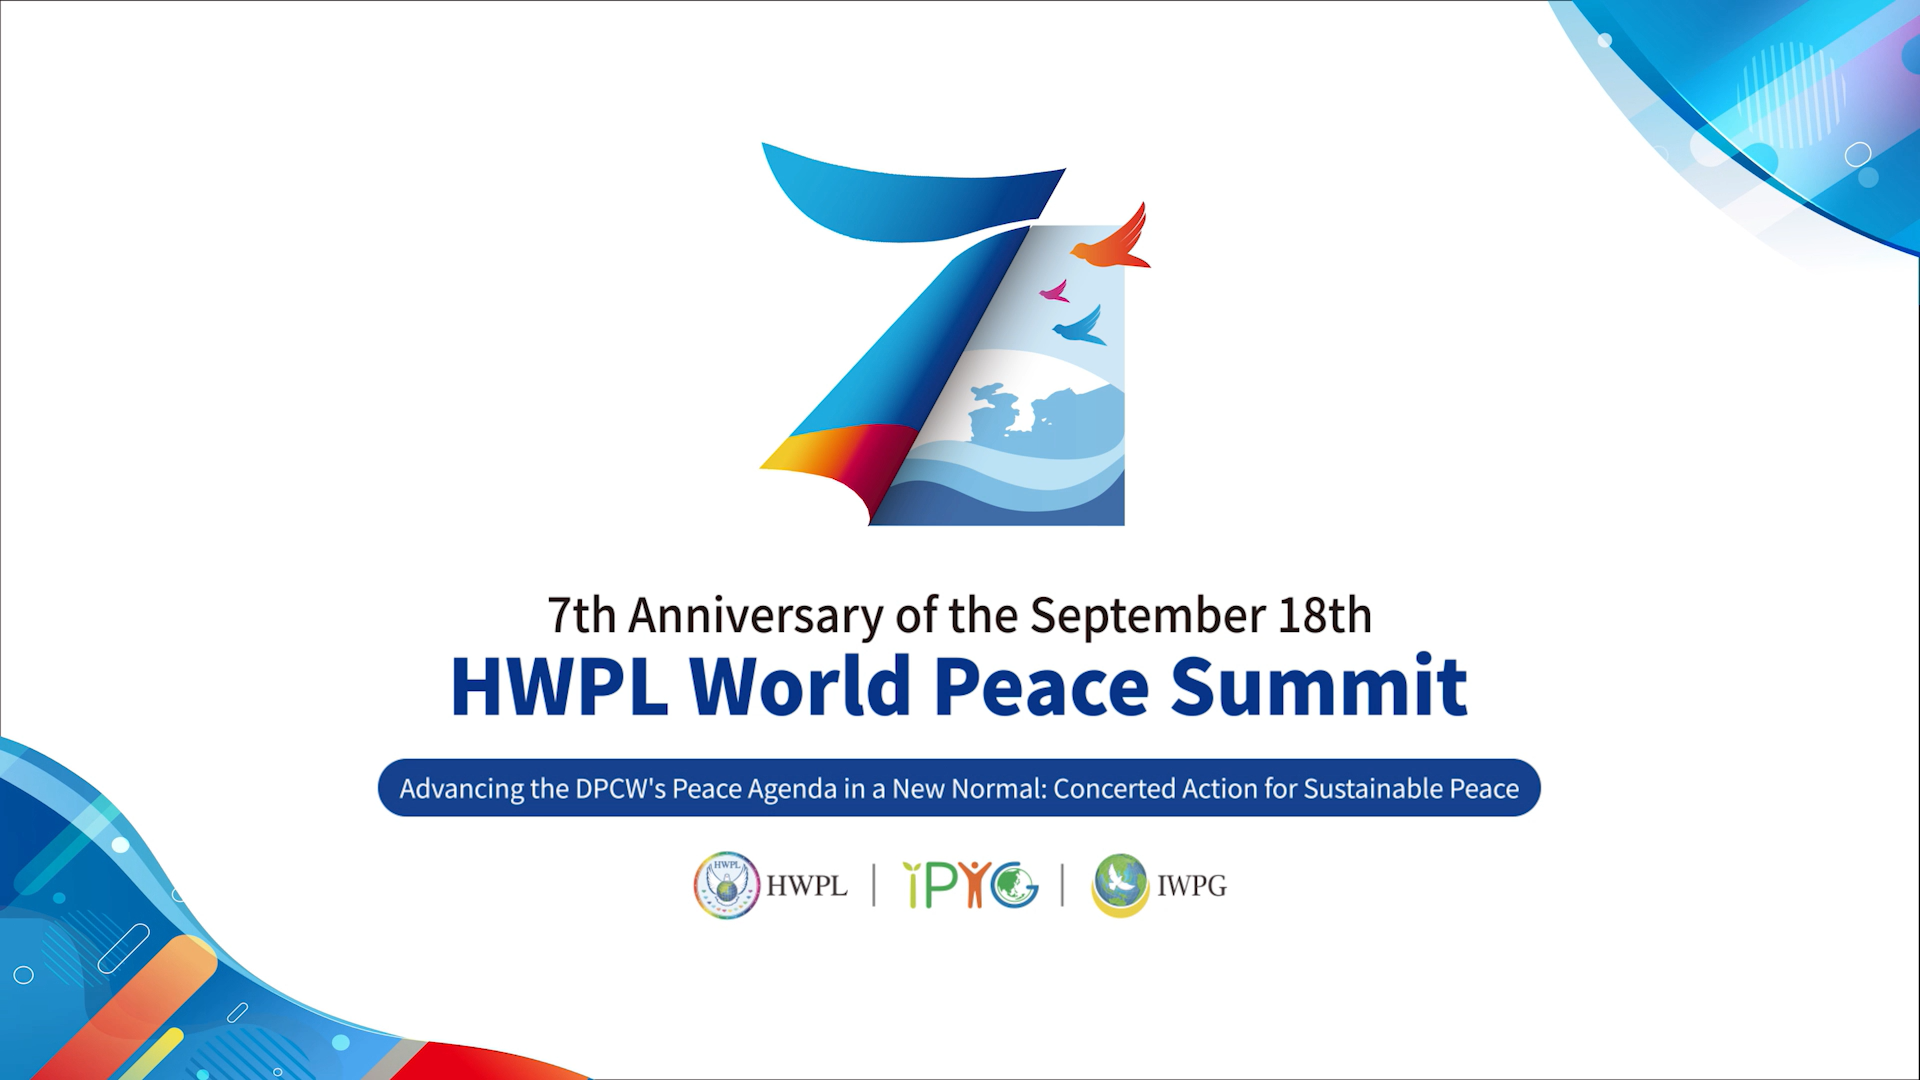 Freie Pressemitteilungen | 7. Jahrestag des HWPL World Peace Summits mit 32.500: Teilnehmern Stärkung der DPCW-Friedensagenda in der Post-Covid Ära - Gemeinsames Handeln für dauerhaften Frieden